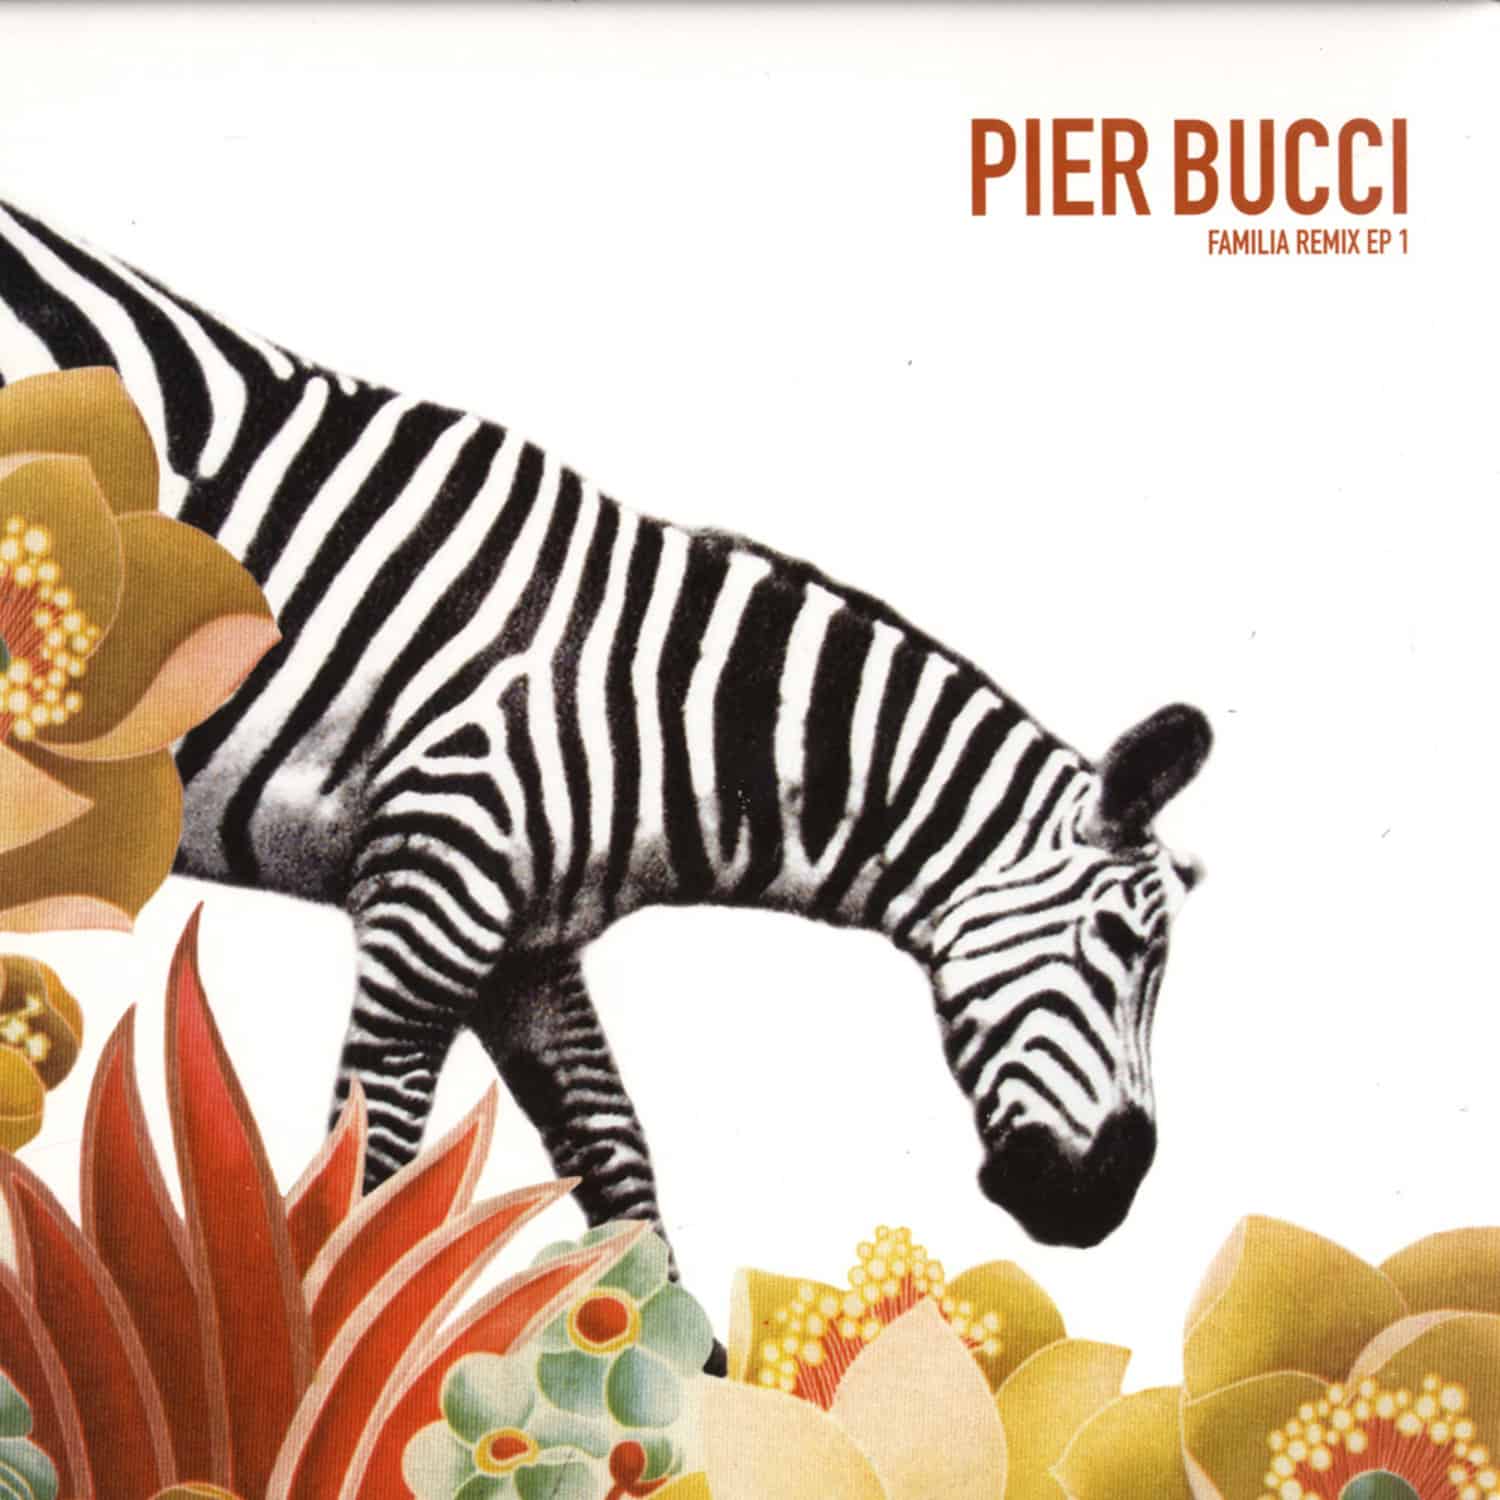 Pier Bucci - FAMILIA REMIX EP